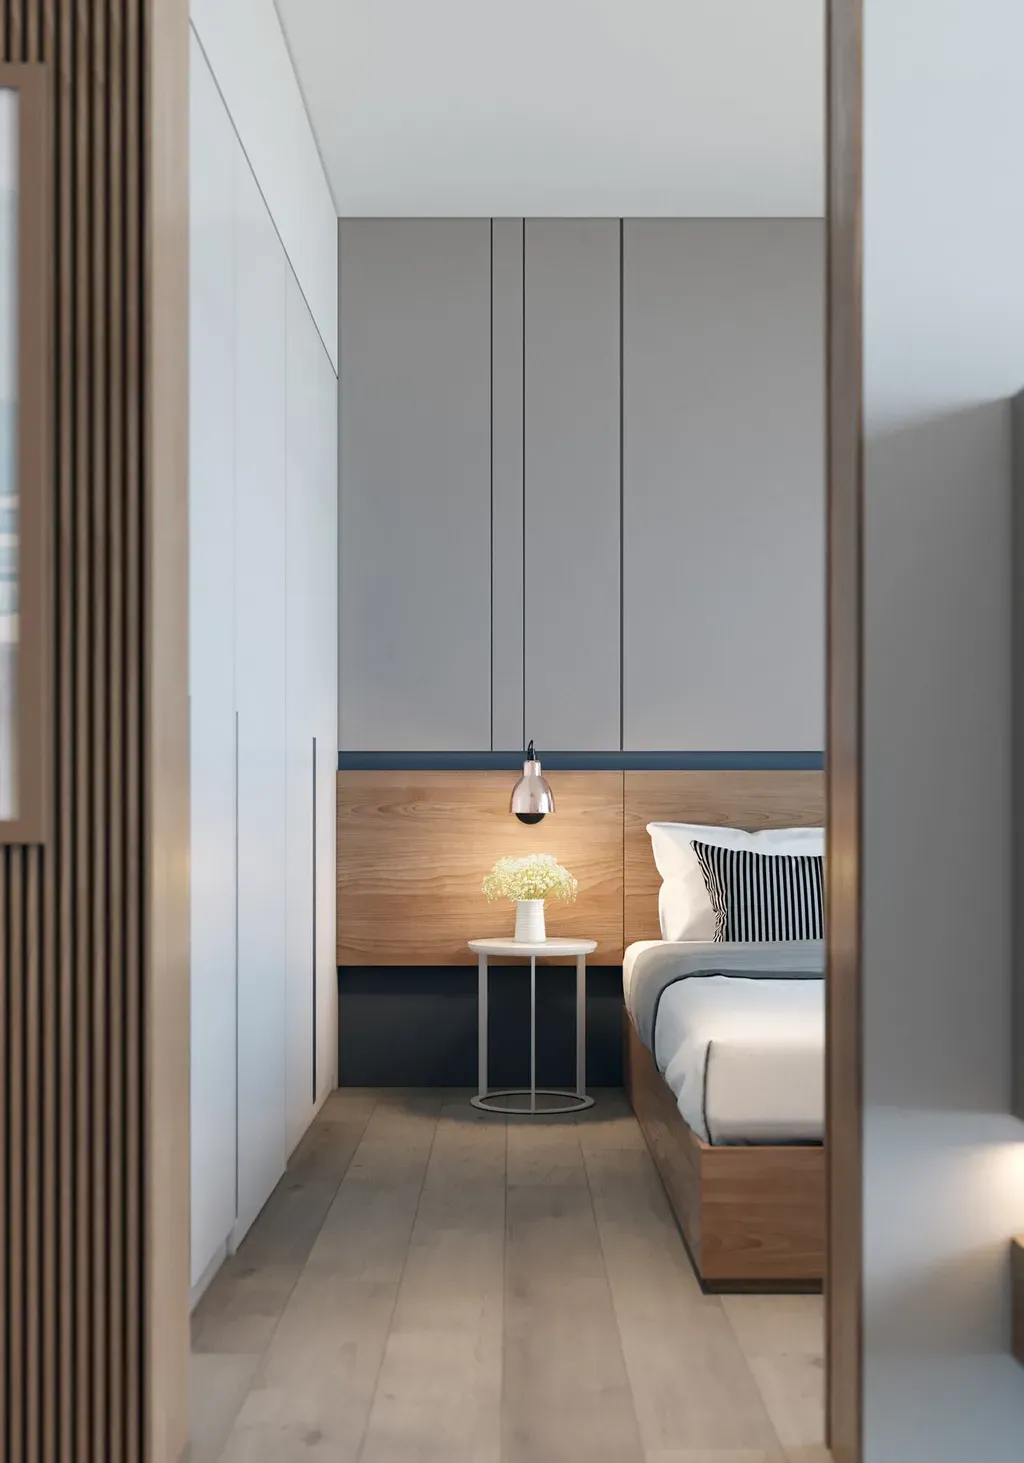 Phòng ngủ - Concept thiết kế 3D căn hộ - Phong cách Minimalism số 2  | Space T